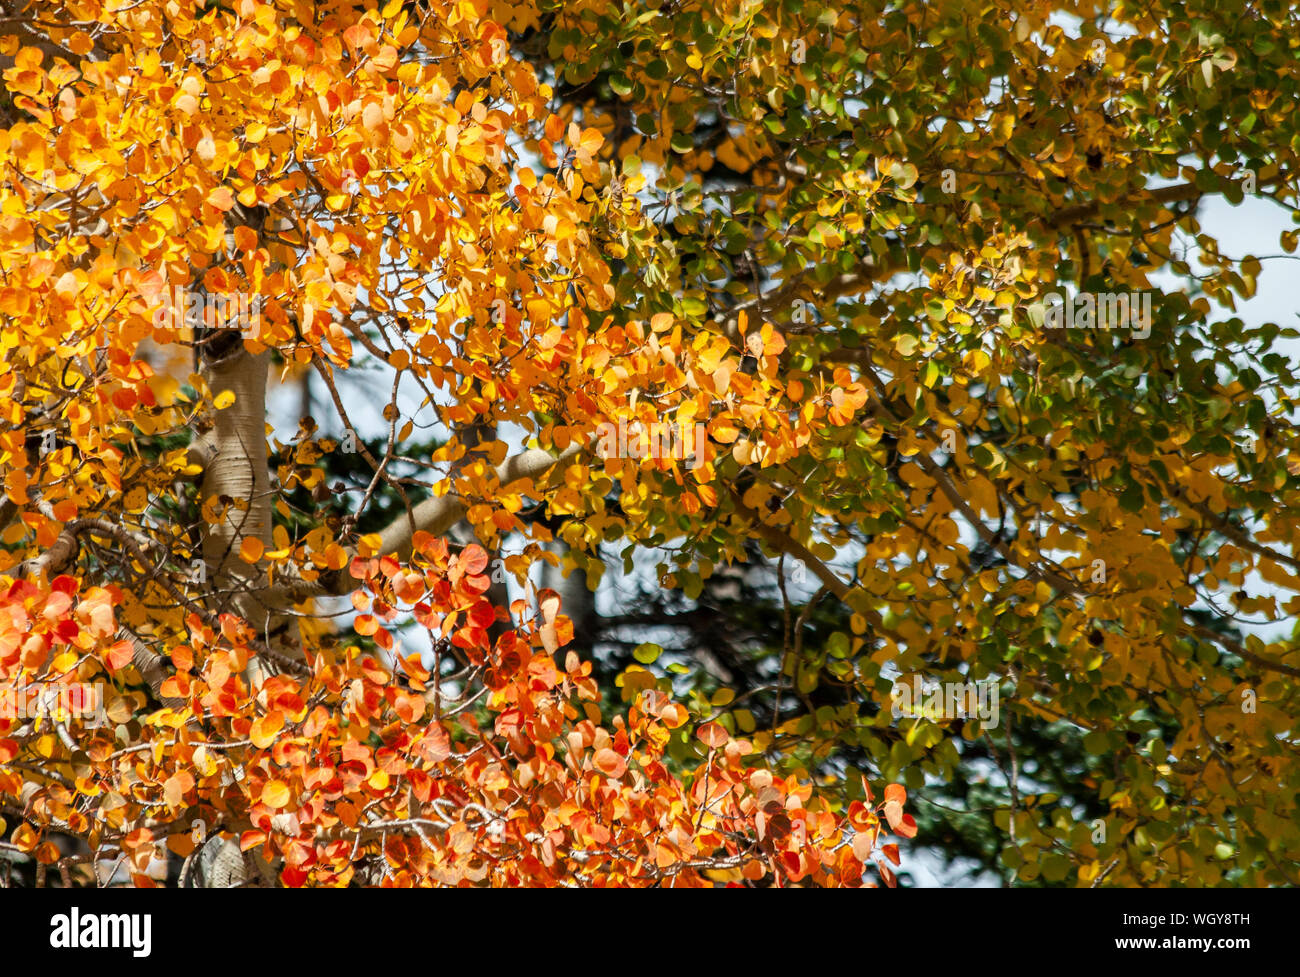 Autumn Leaves on Aspen Trees Stock Photo